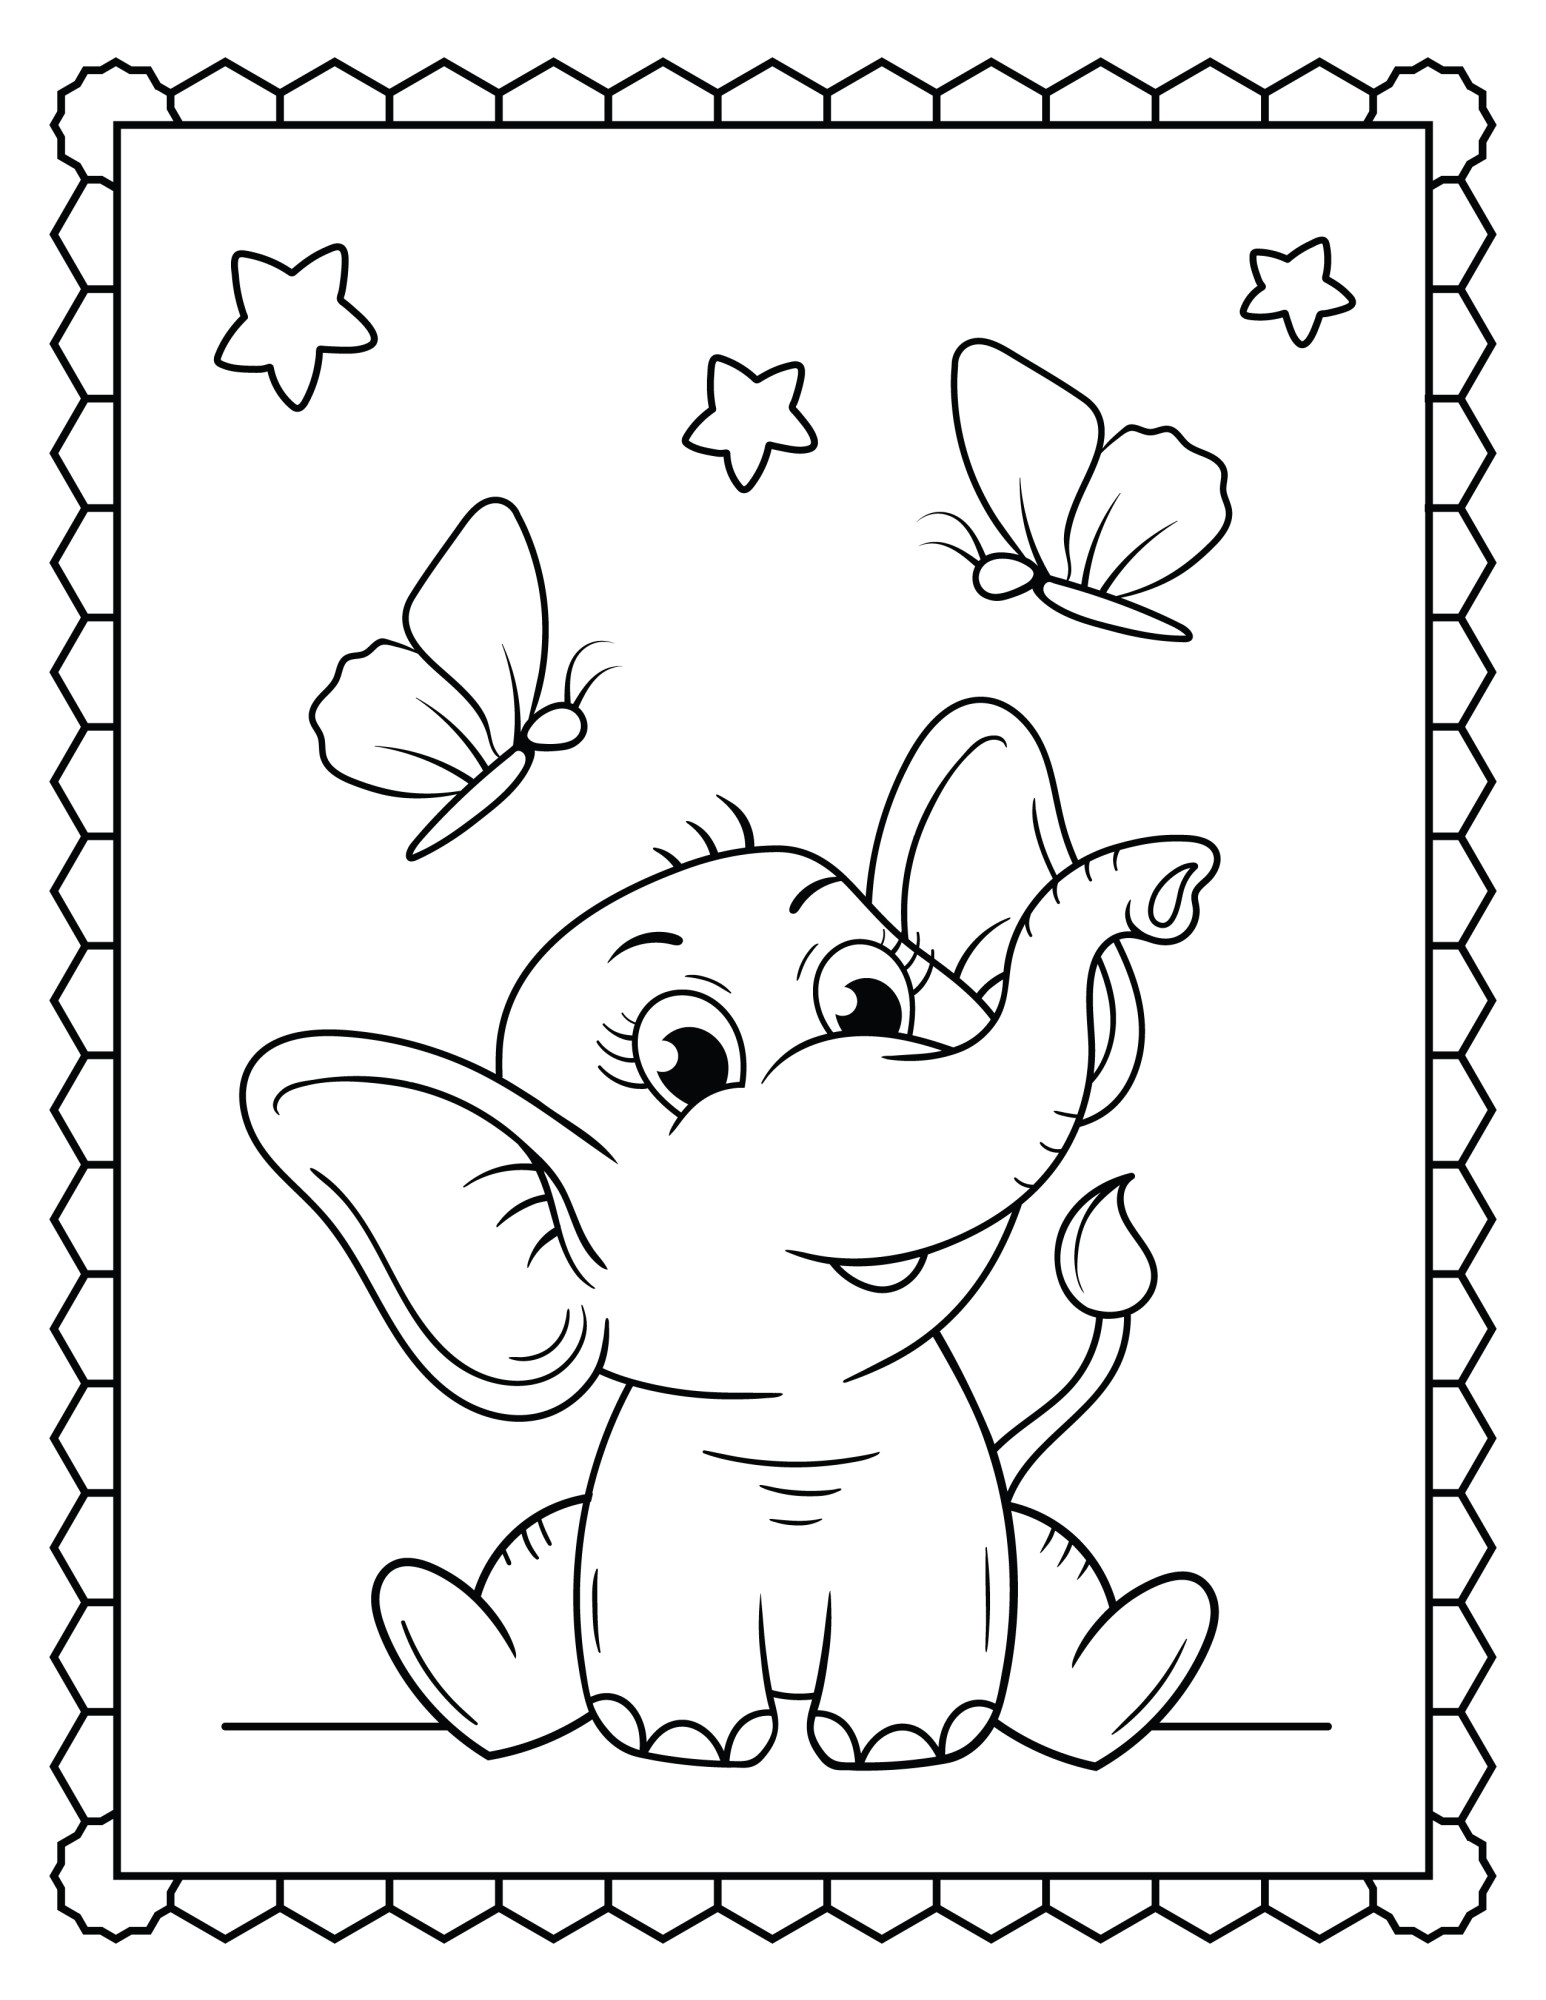 Раскраска для детей: две бабочки и слоник